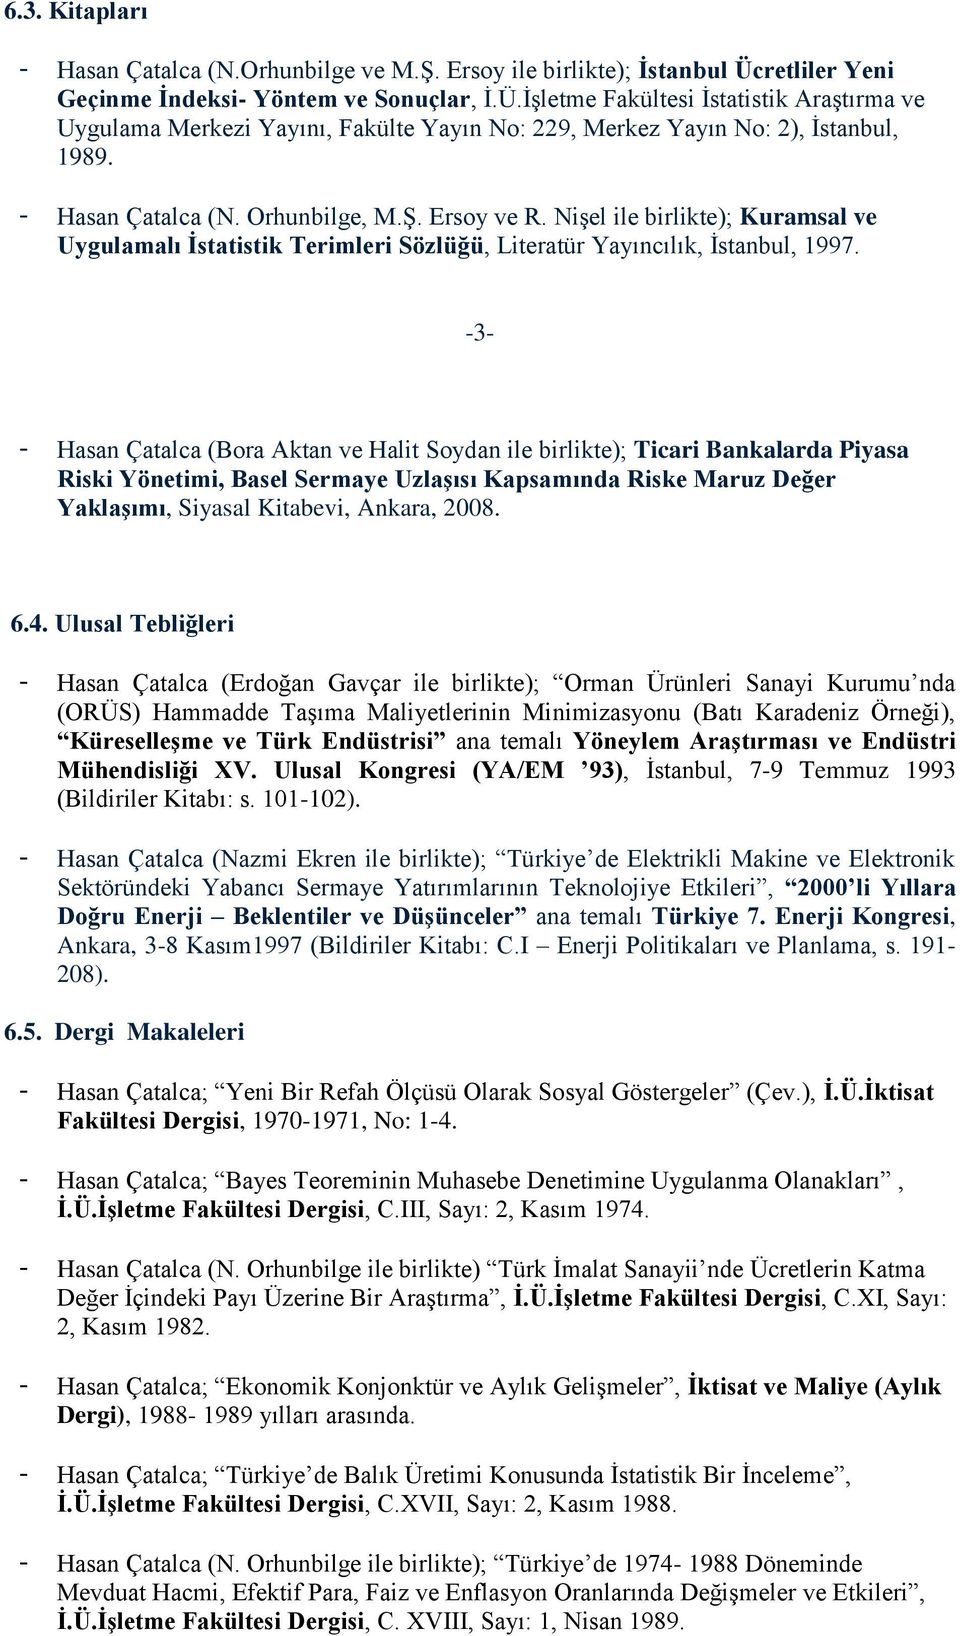 - Hasan Çatalca (N. Orhunbilge, M.Ş. Ersoy ve R. Nişel ile birlikte); Kuramsal ve Uygulamalı İstatistik Terimleri Sözlüğü, Literatür Yayıncılık, İstanbul, 1997.